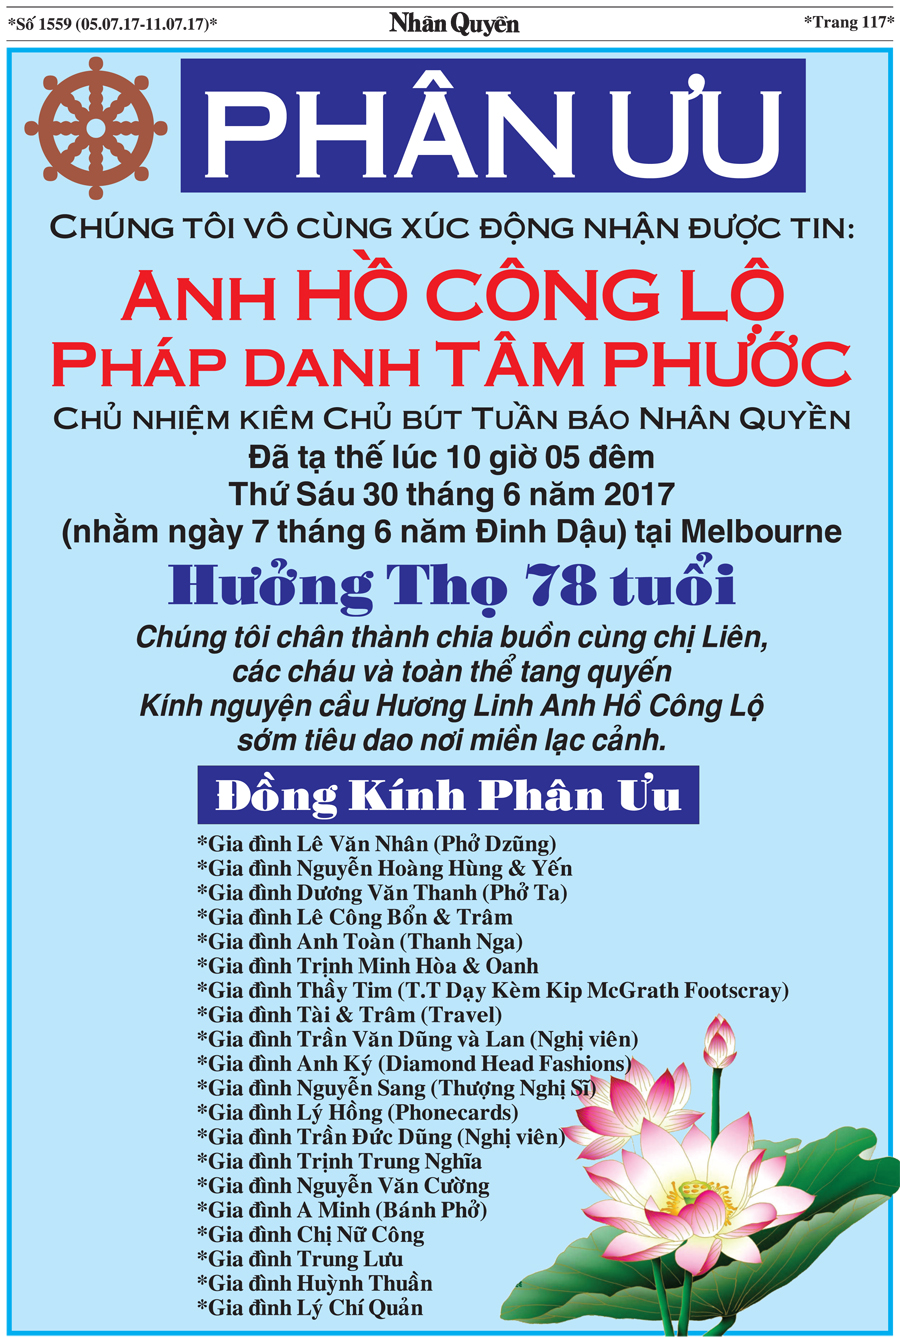 Bao Nhan Quyen SoDac Biet ve Chu But Ho Cong Lo (20)